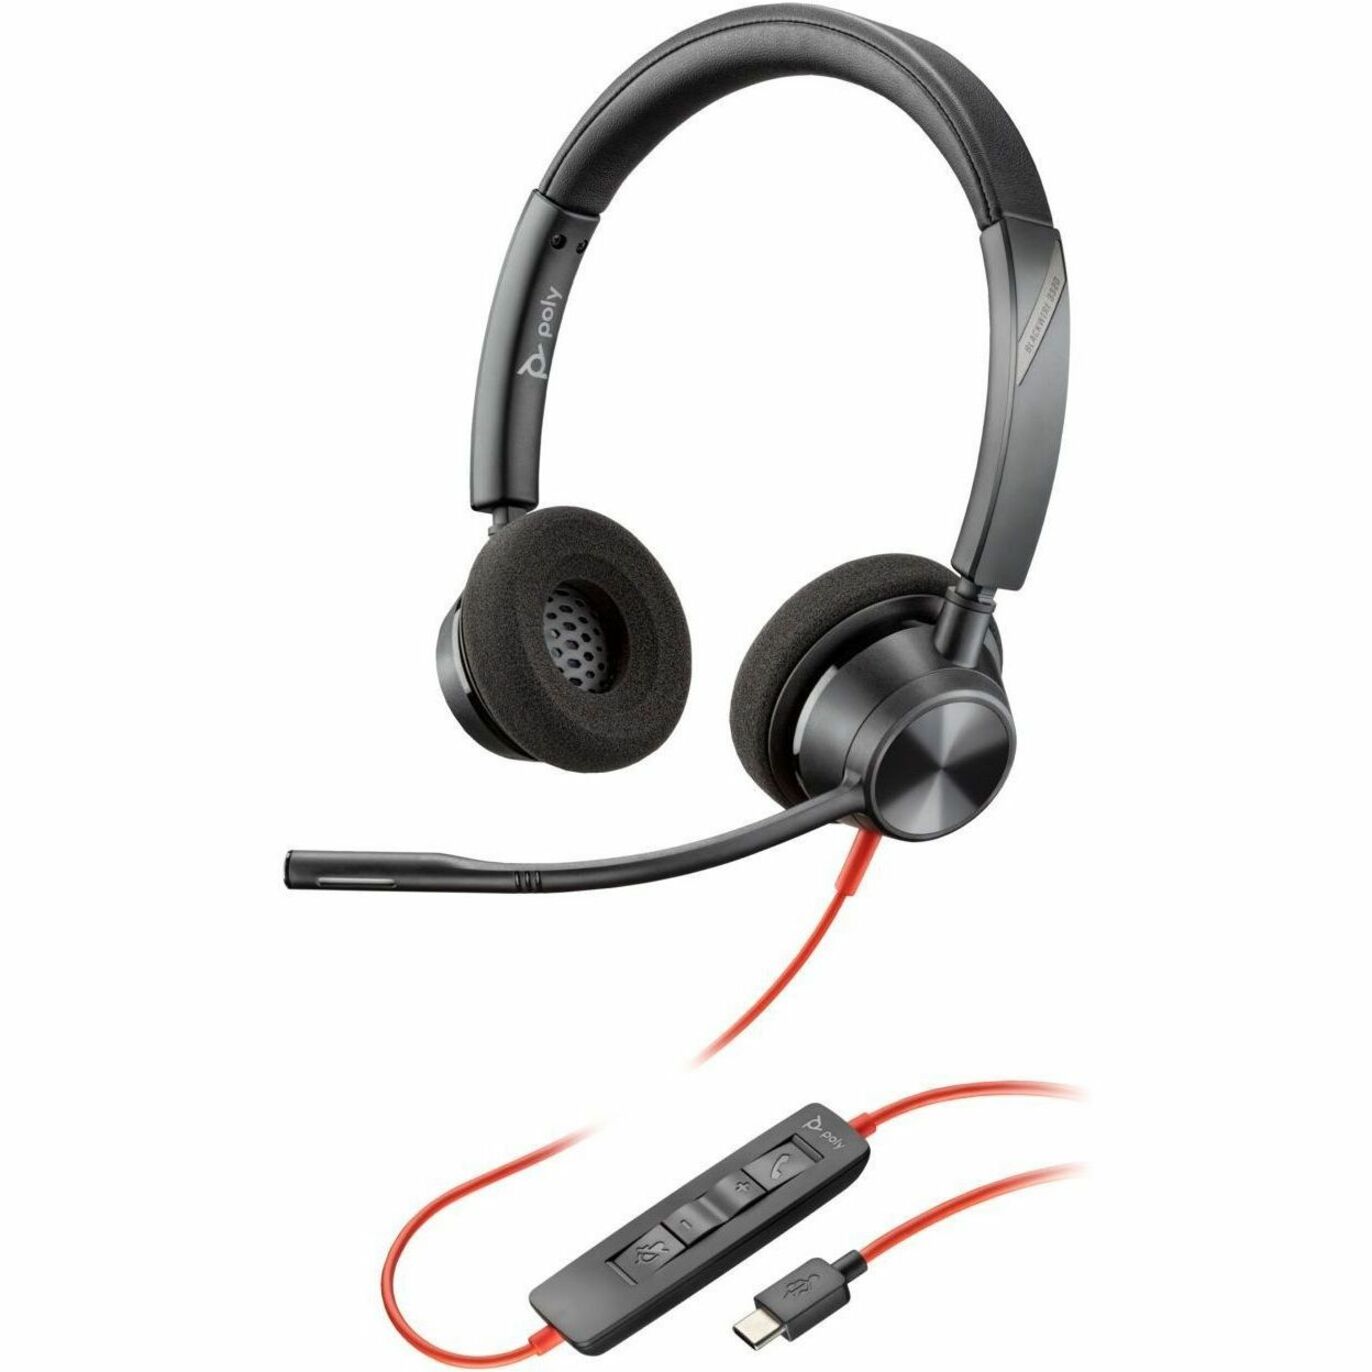 品牌: Poly 商品名称: 黑线3320 USB-C耳机 TAA 单声道带麦克风 降噪 2年保修